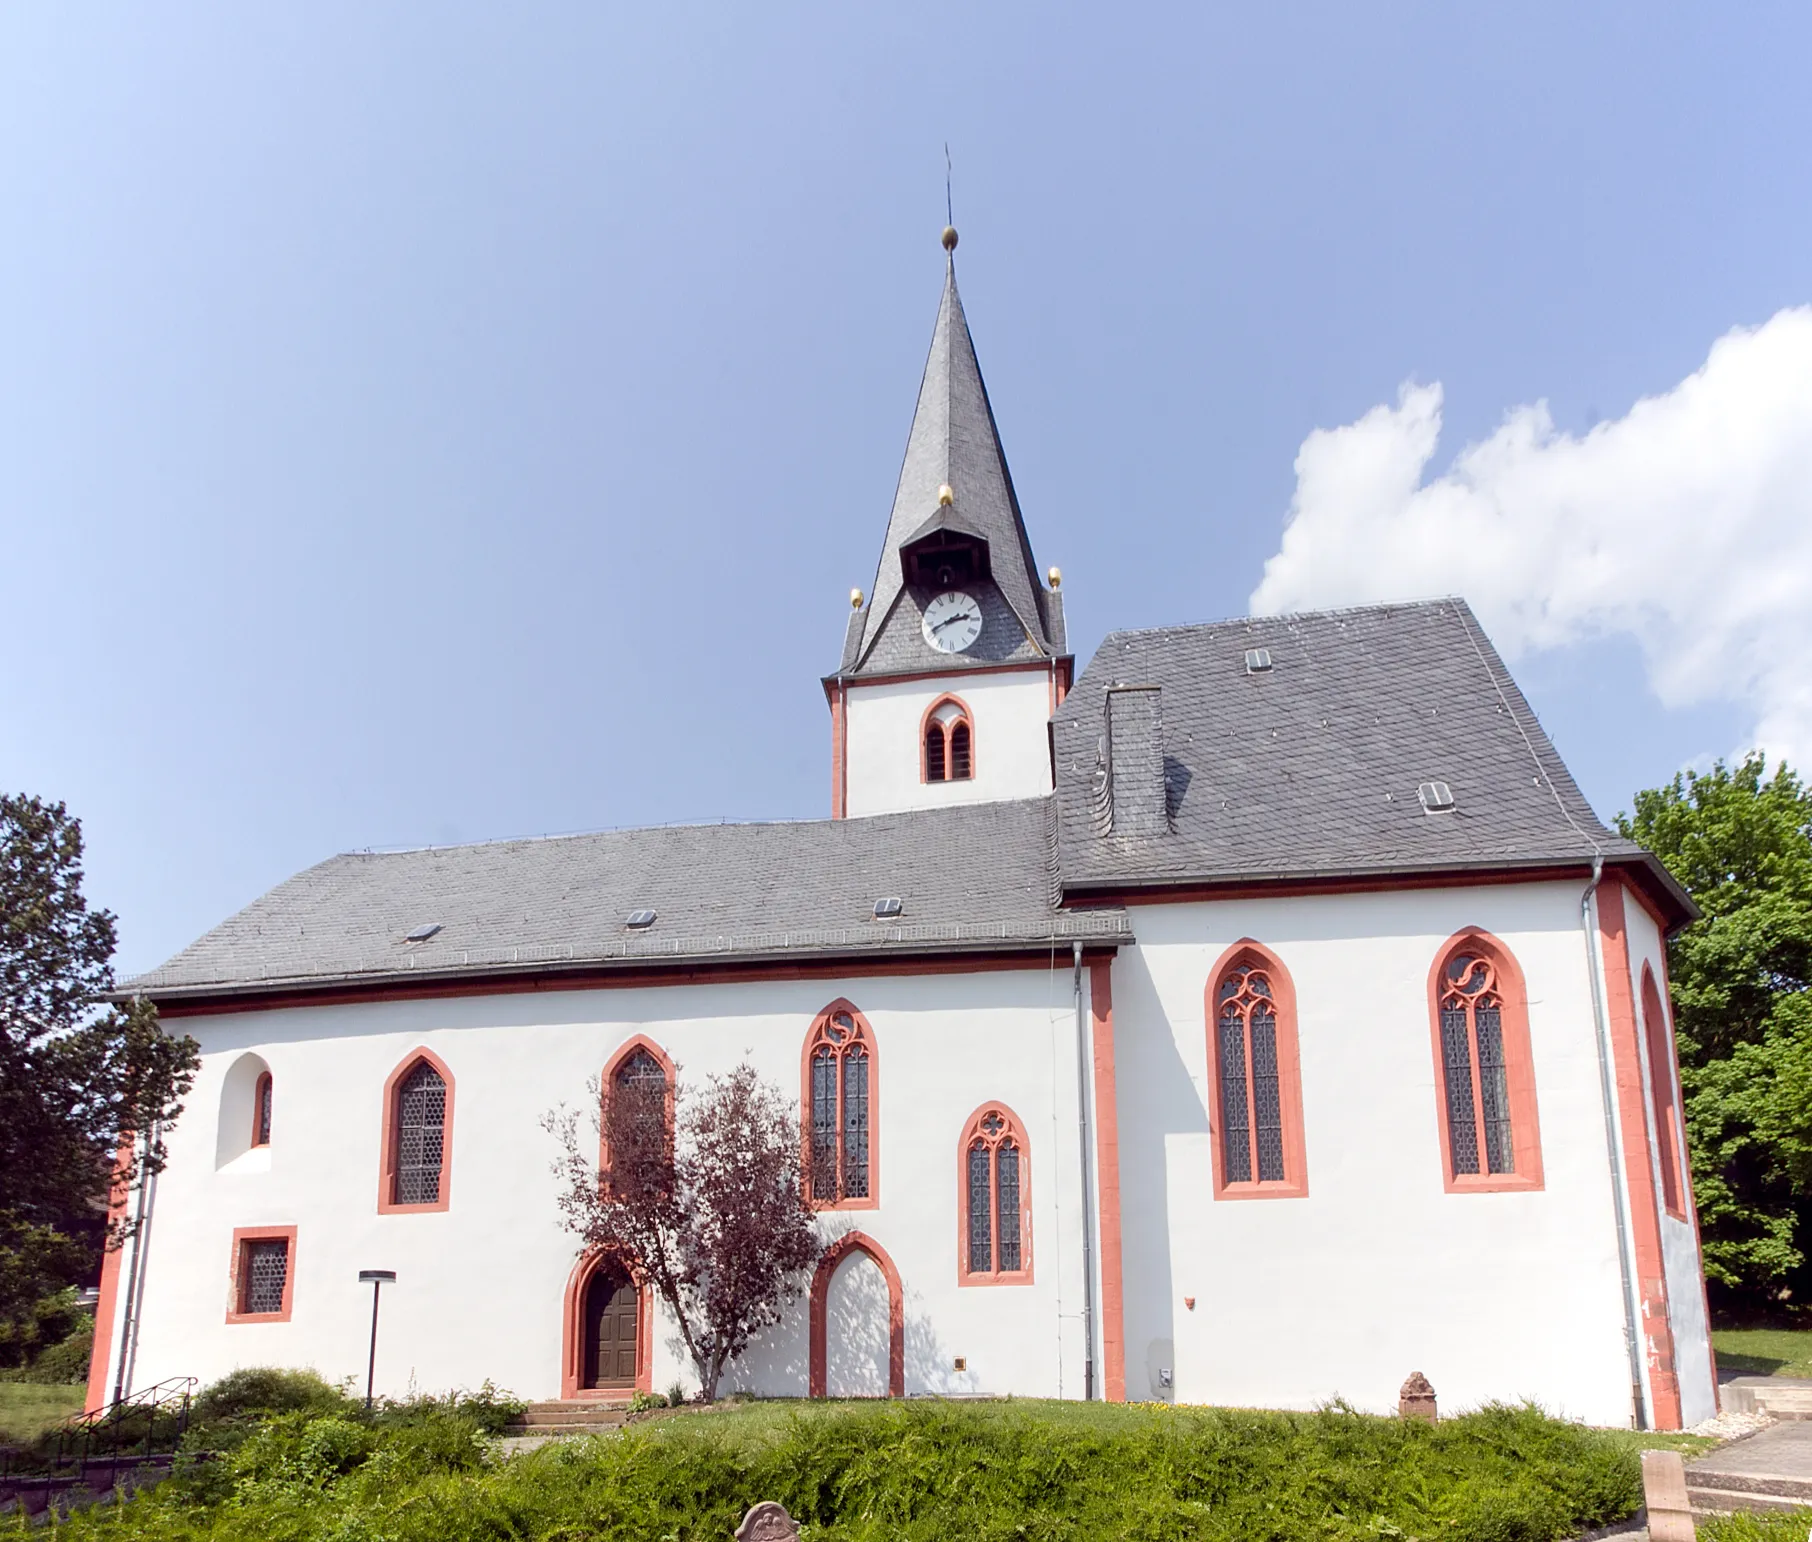 Photo showing: Evangelische Kirche in Dauernheim, Stadtteil von Ranstadt im Wetteraukreis, Deutschland.